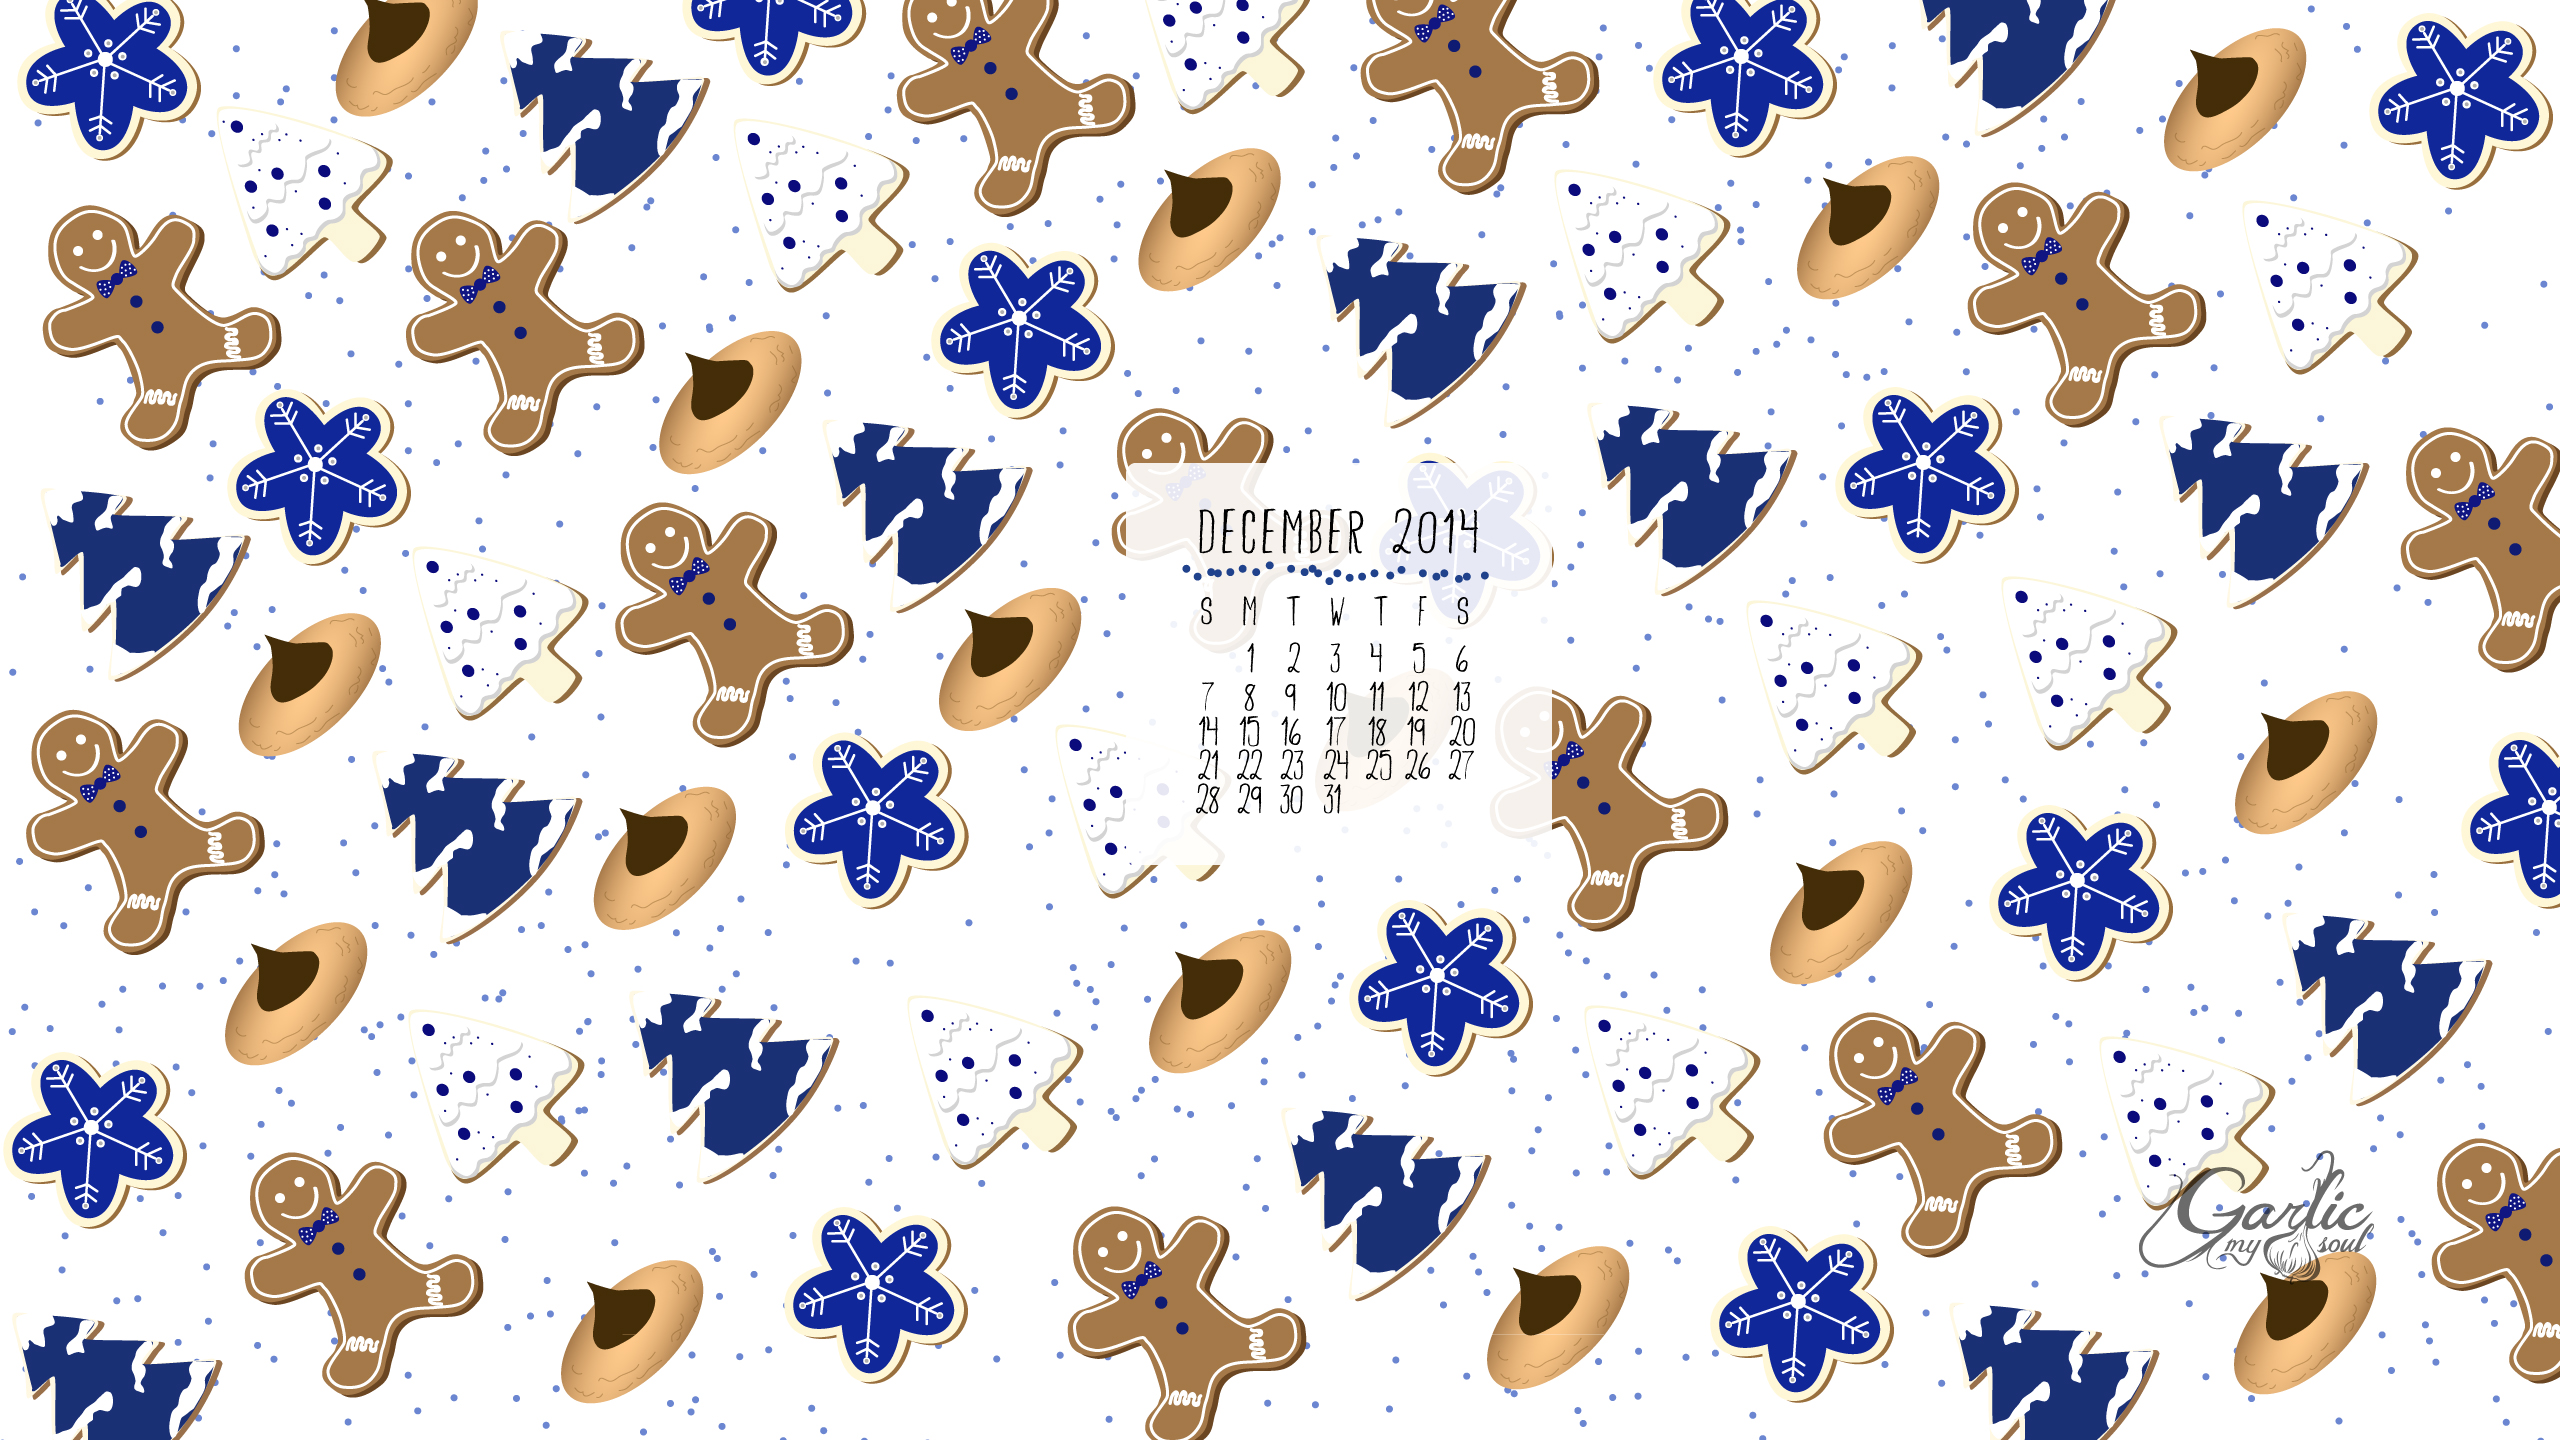 December Desktop Calendar | Garlic, My Soul